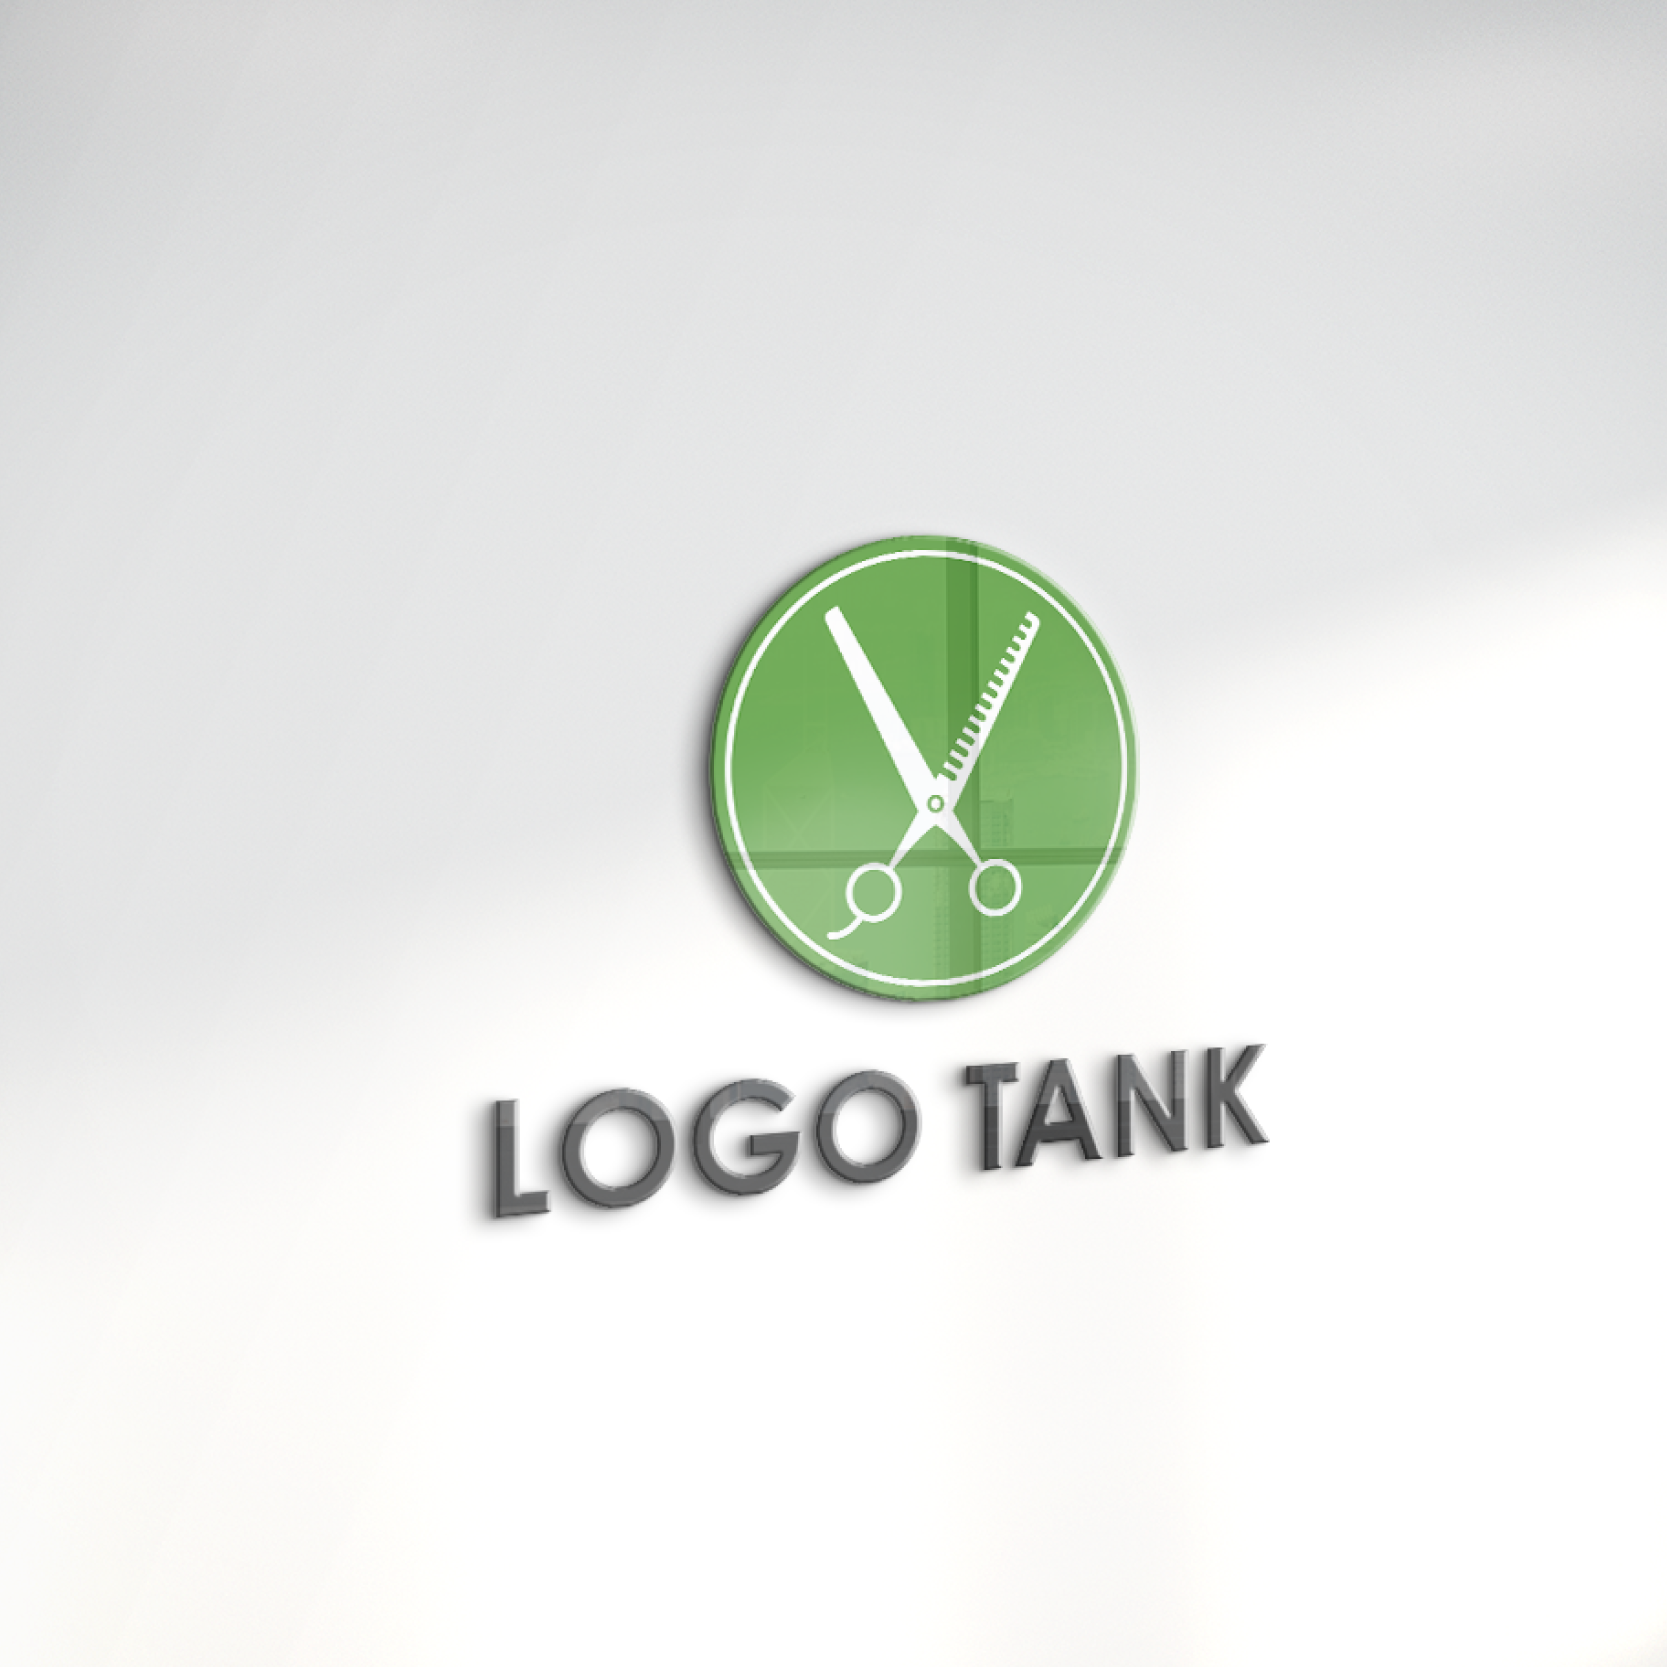 Vをイメージしたはさみのロゴ はさみ / 美容院 / ヘアサロン / V / 緑 / グリーン /,ロゴタンク,ロゴ,ロゴマーク,作成,制作